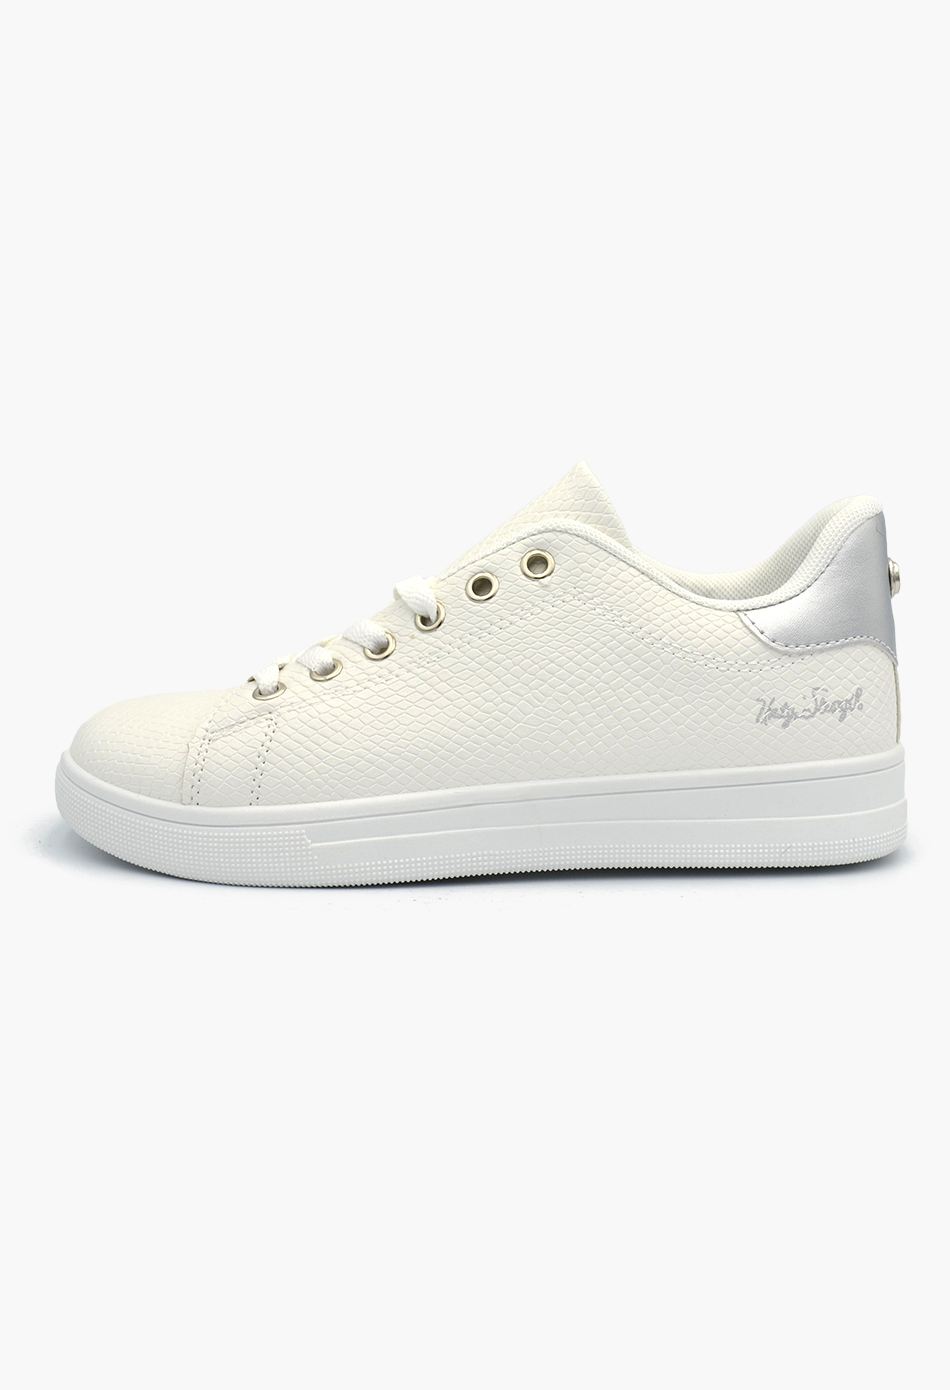 Γυναικεία Flatforms Sneakers Λευκό / OX2528-silver Γυναικεία Αθλητικά και Sneakers joya.gr